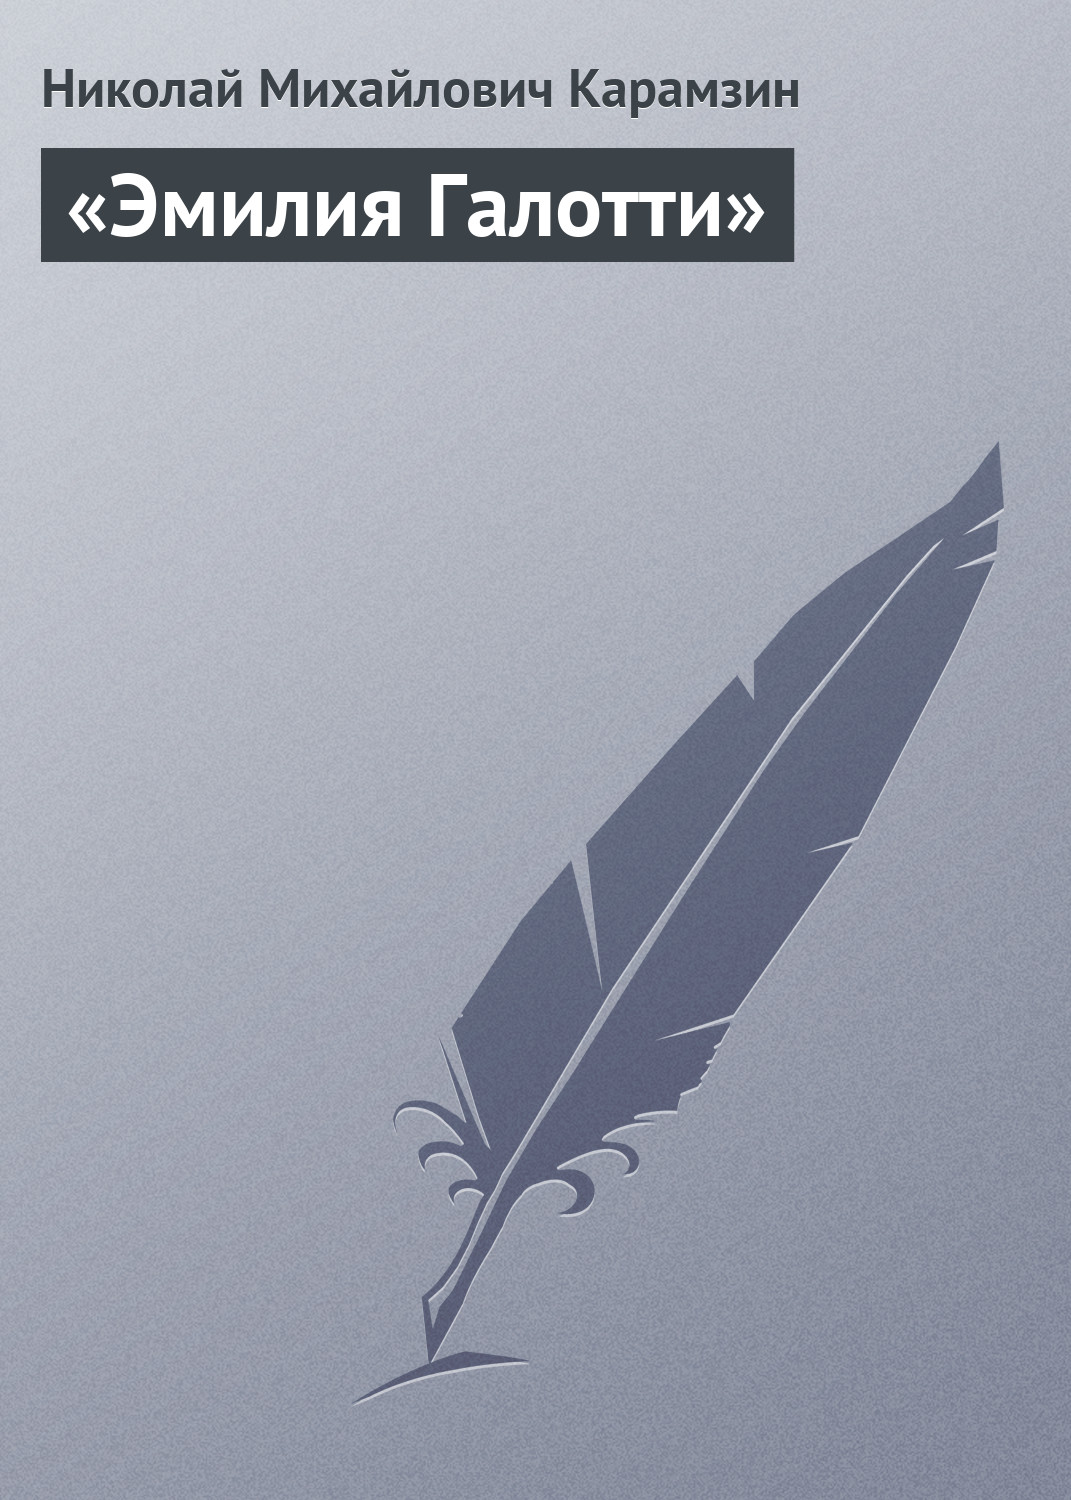 Книга «Эмилия Галотти» из серии , созданная Николай Карамзин, может относится к жанру Критика. Стоимость книги «Эмилия Галотти»  с идентификатором 2975795 составляет 5.99 руб.